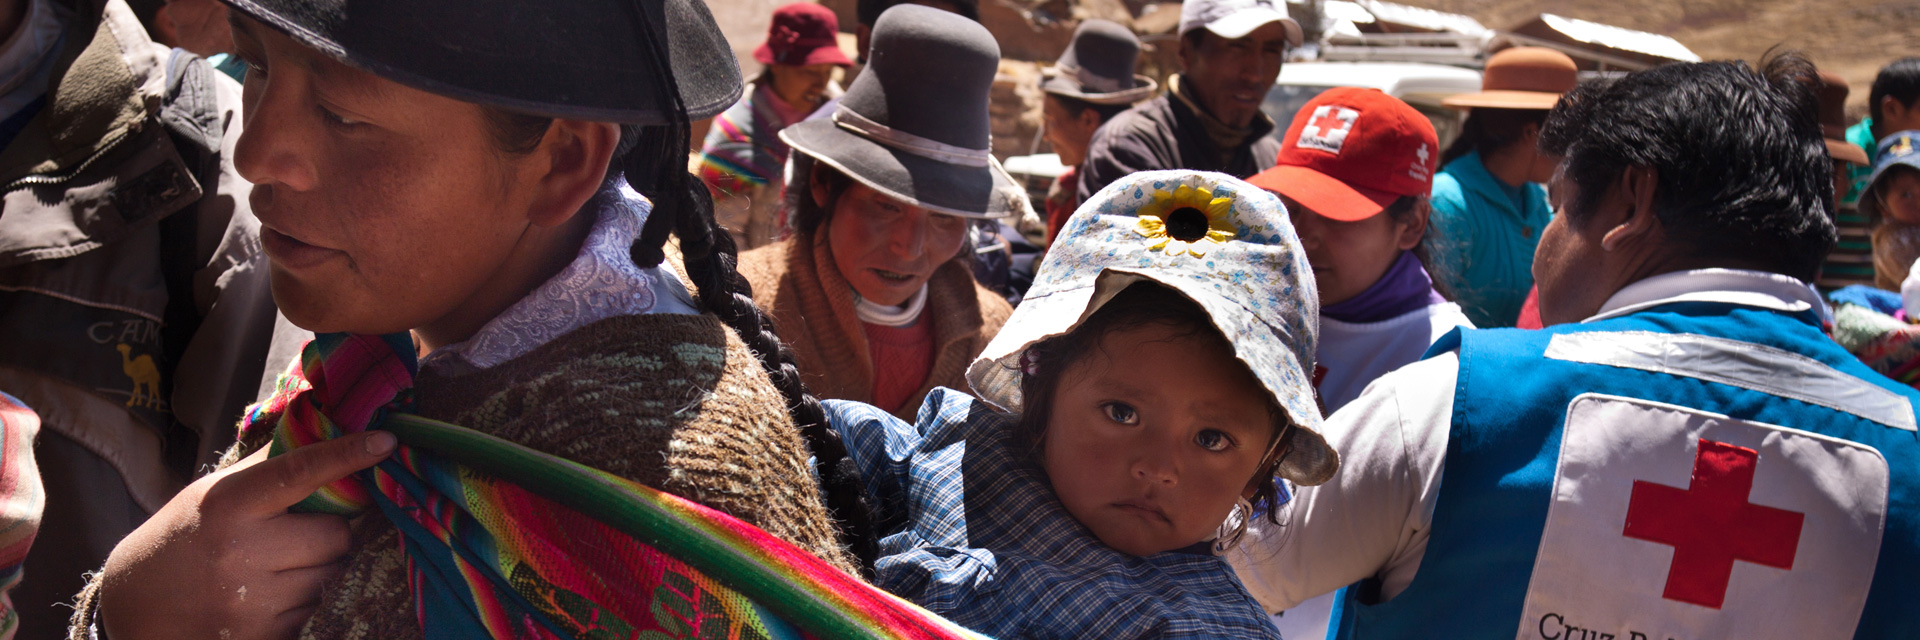 Spenden für Peru: Hilfsgüter für peruanische Mutter mit Kind